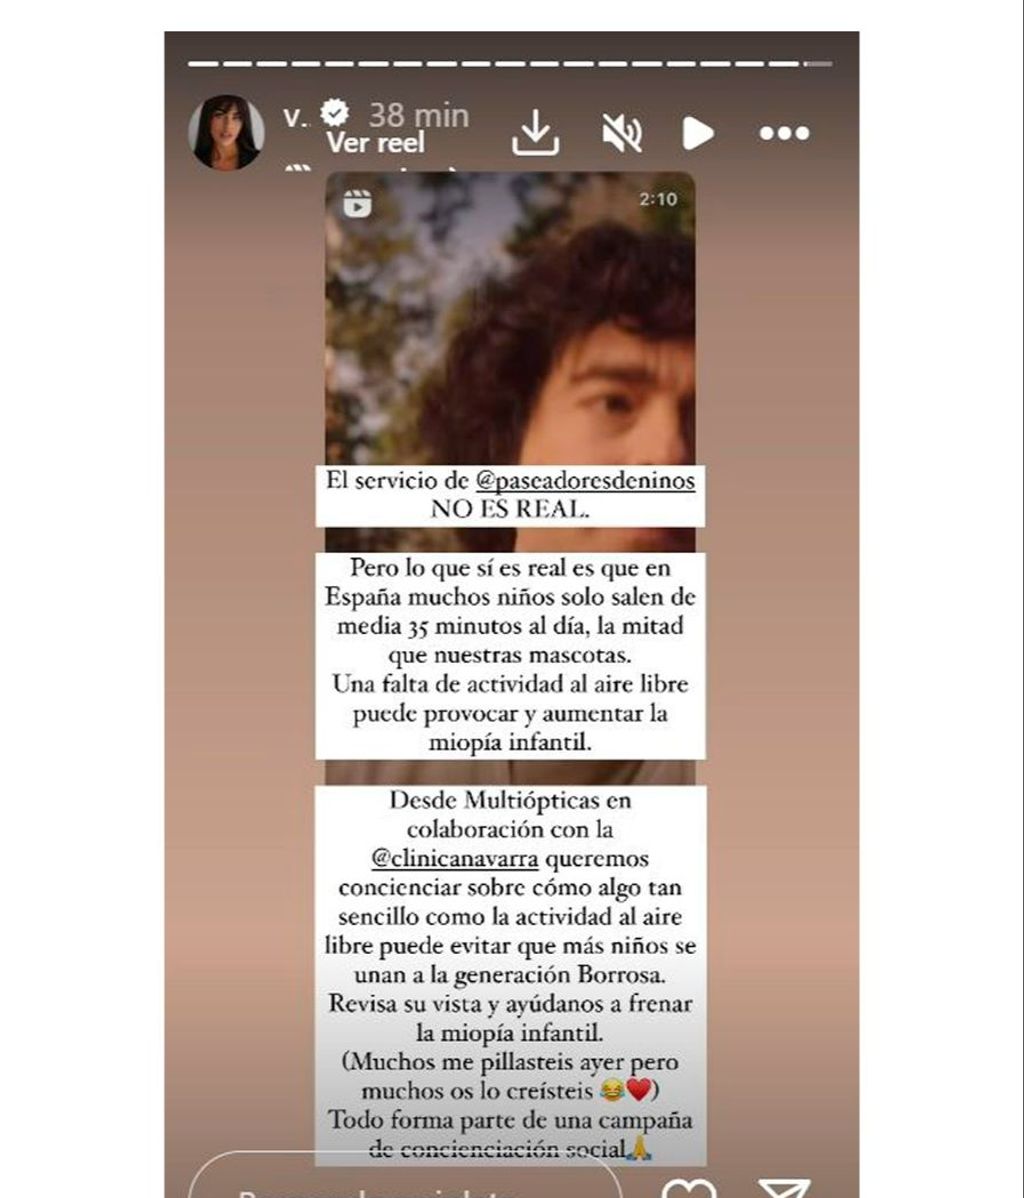 Violeta Mangriñán confirma la promoción de la campaña de concienciación creada por Multiópticas